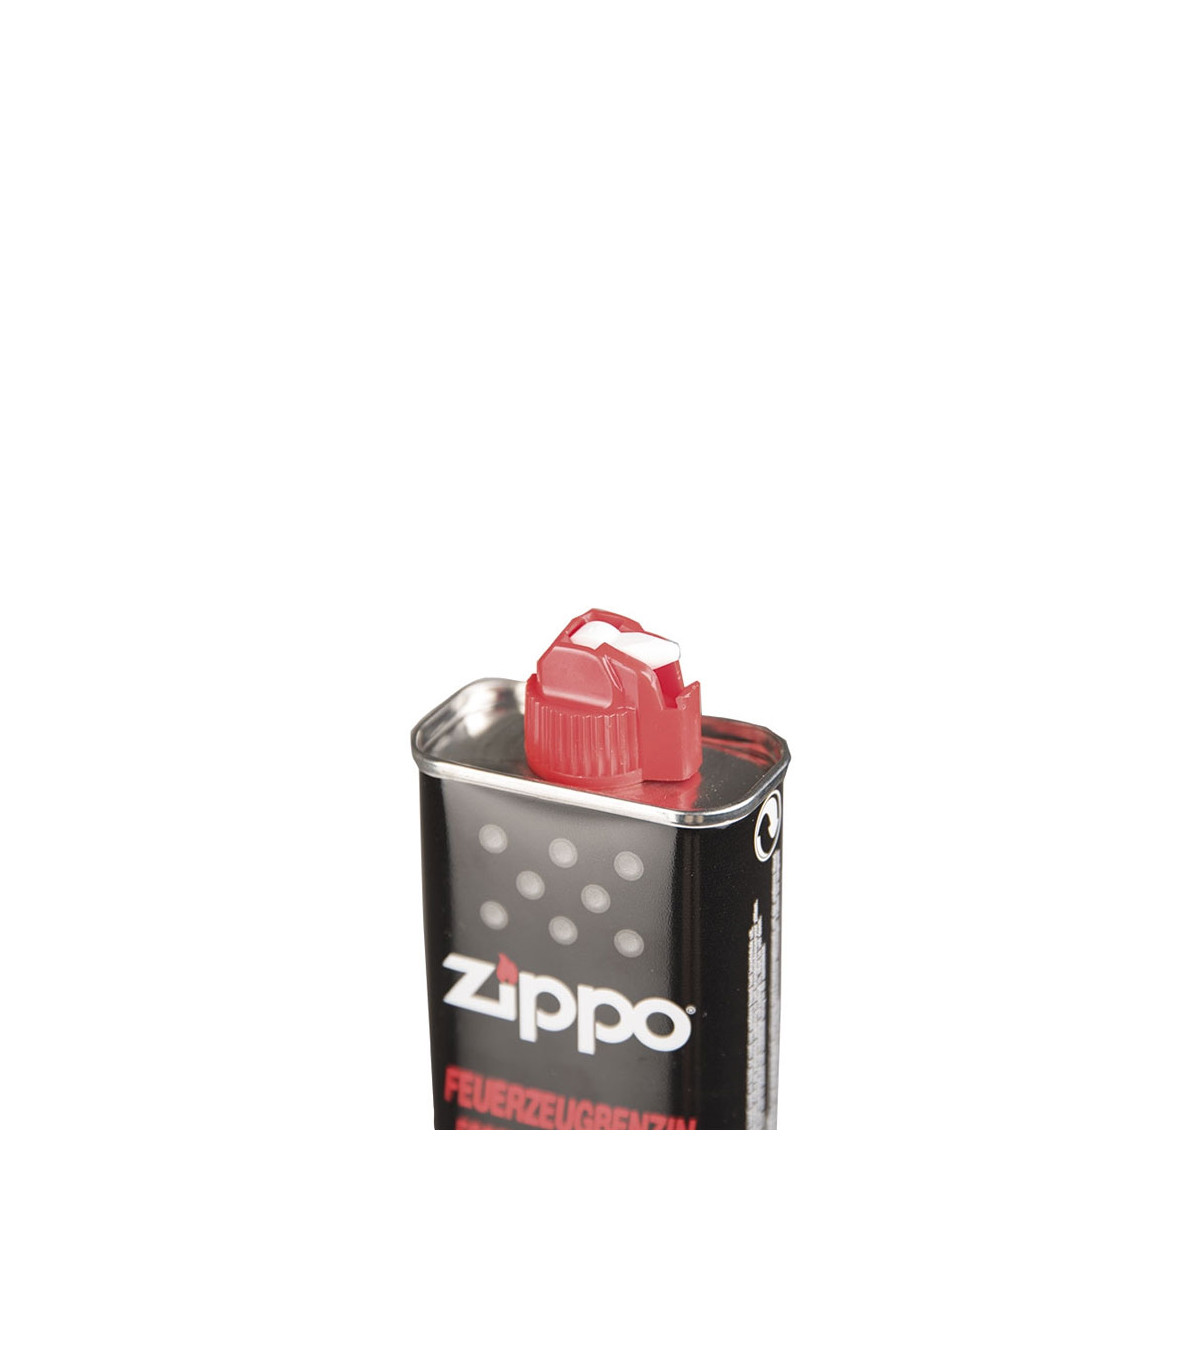 Nos Briquets style zippo au meilleur prix rechargeables à l'essence.